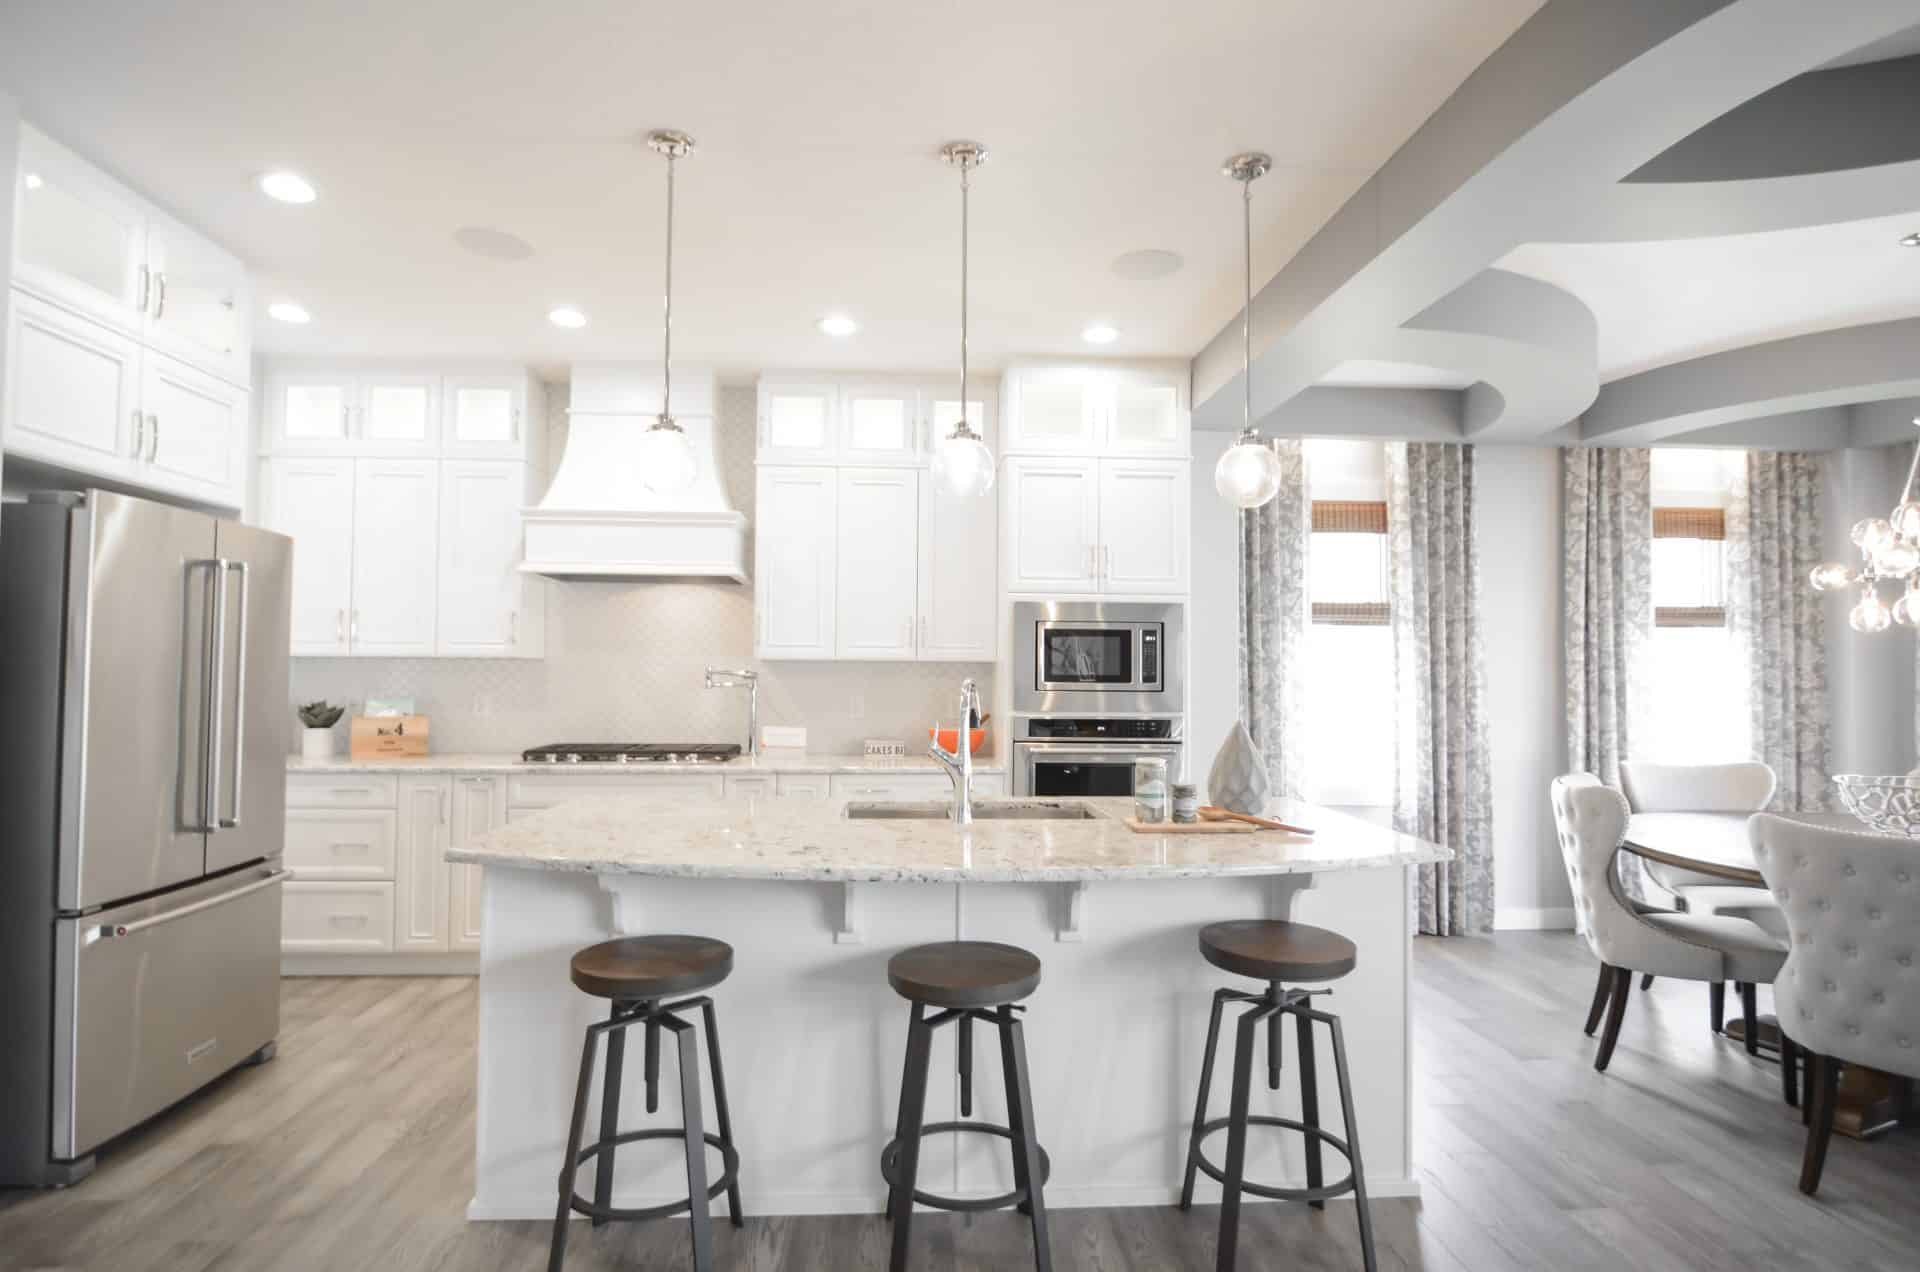 white kitchen with grey hardwood floors Cuisine blanche avec planchers de bois franc gris.